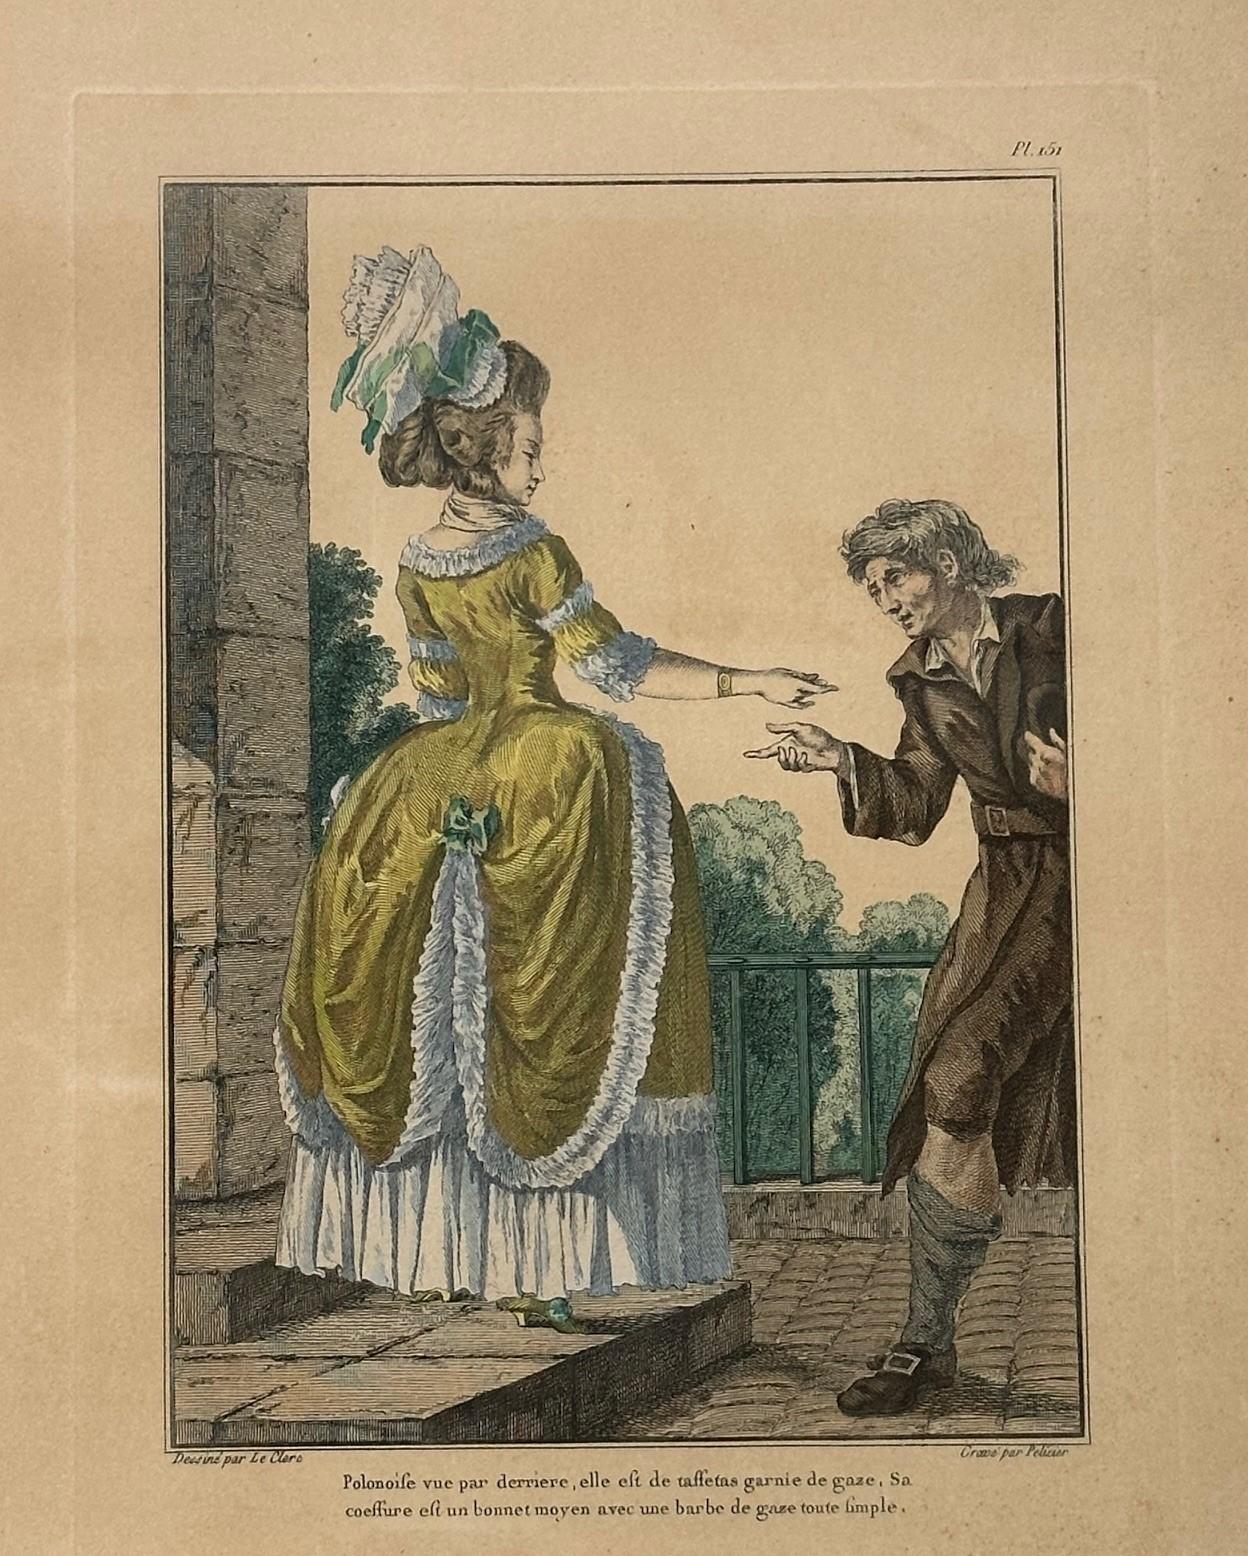 Handkolorierte Galerie des Modes Kostüme Francais mit französischer Gravur, 1779.

Seltener antiker französischer Modedruck, handkoloriert, zuerst in Paris 1779 veröffentlicht. Die Kompositionen orientierten sich an den modischsten Kleidungsstücken